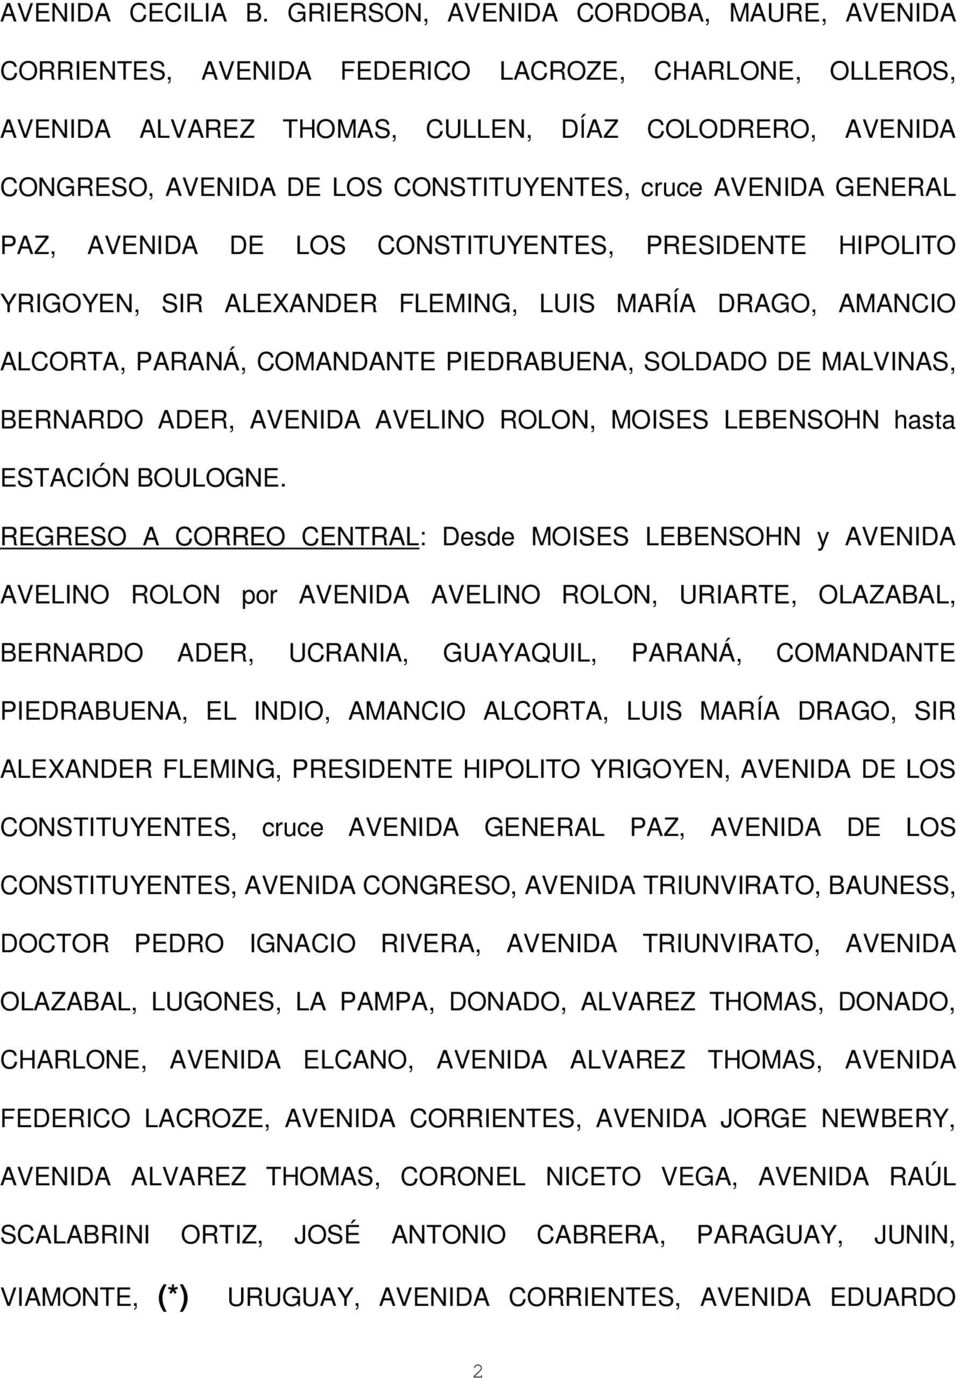 cruce AVENIDA GENERAL PAZ, AVENIDA DE LOS CONSTITUYENTES, PRESIDENTE HIPOLITO YRIGOYEN, SIR ALEXANDER FLEMING, LUIS MARÍA DRAGO, AMANCIO ALCORTA, PARANÁ, COMANDANTE PIEDRABUENA, SOLDADO DE MALVINAS,